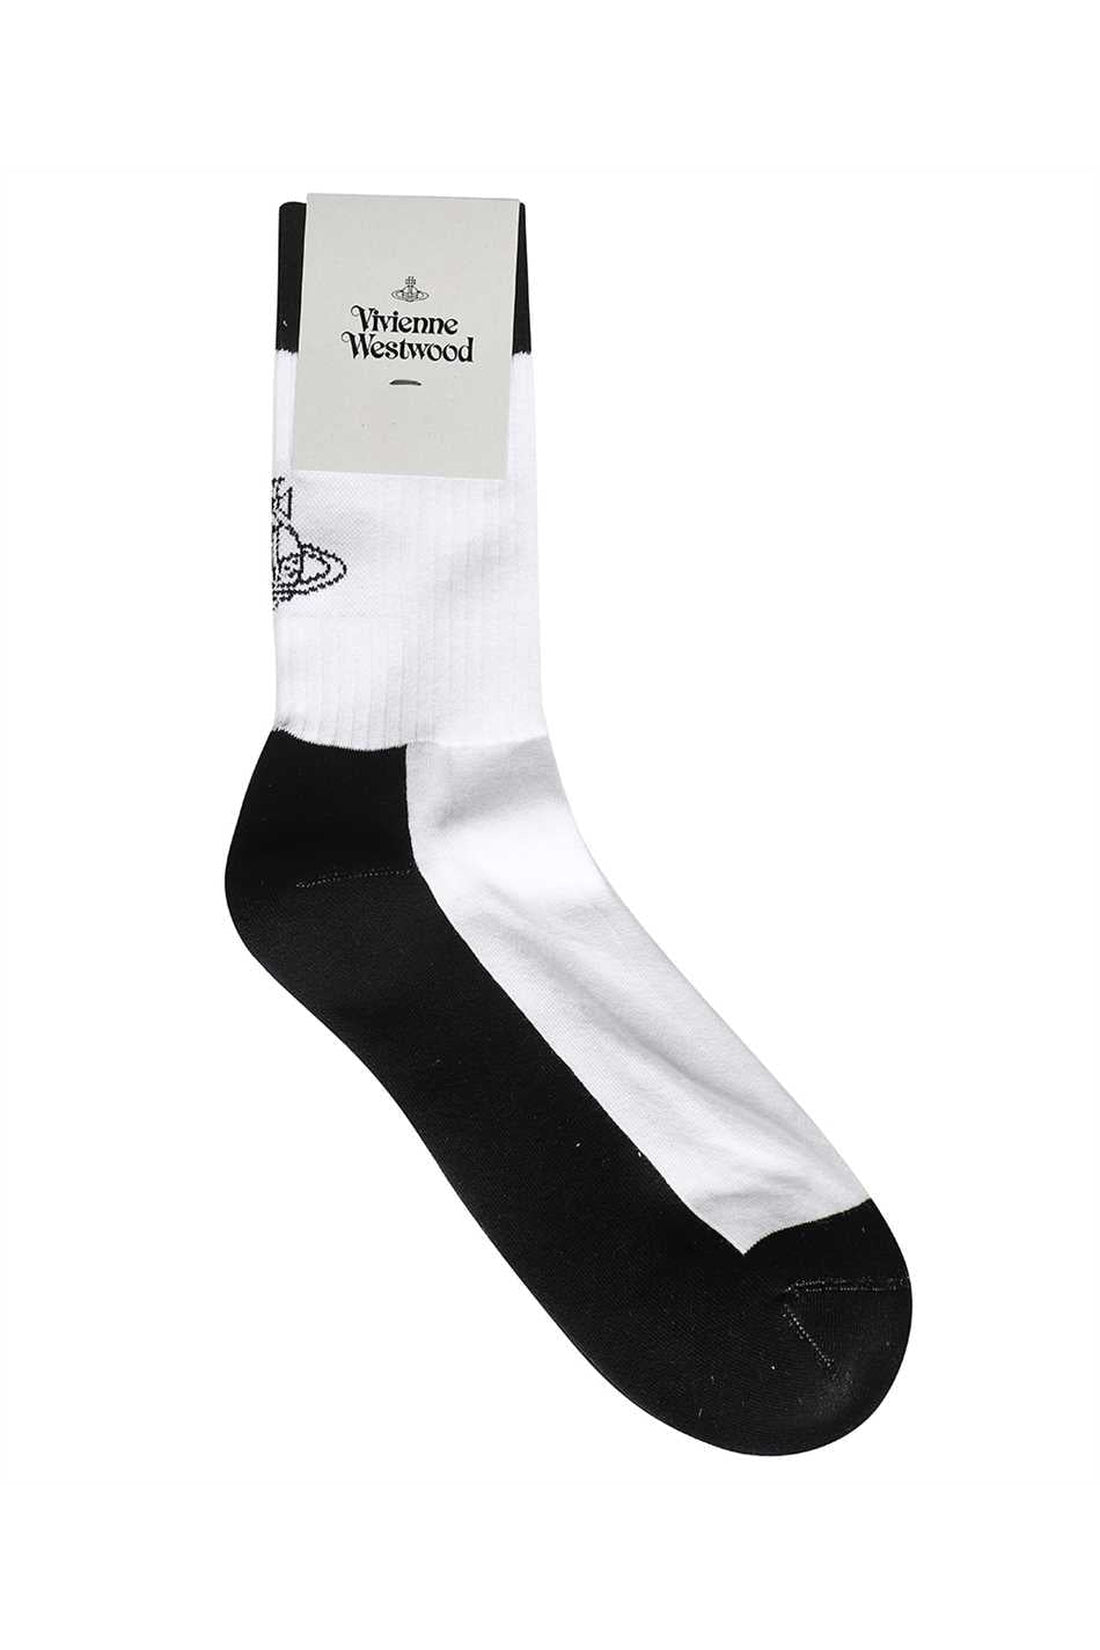 Vivienne Westwood-OUTLET-SALE-Logo cotton blend socks-ARCHIVIST